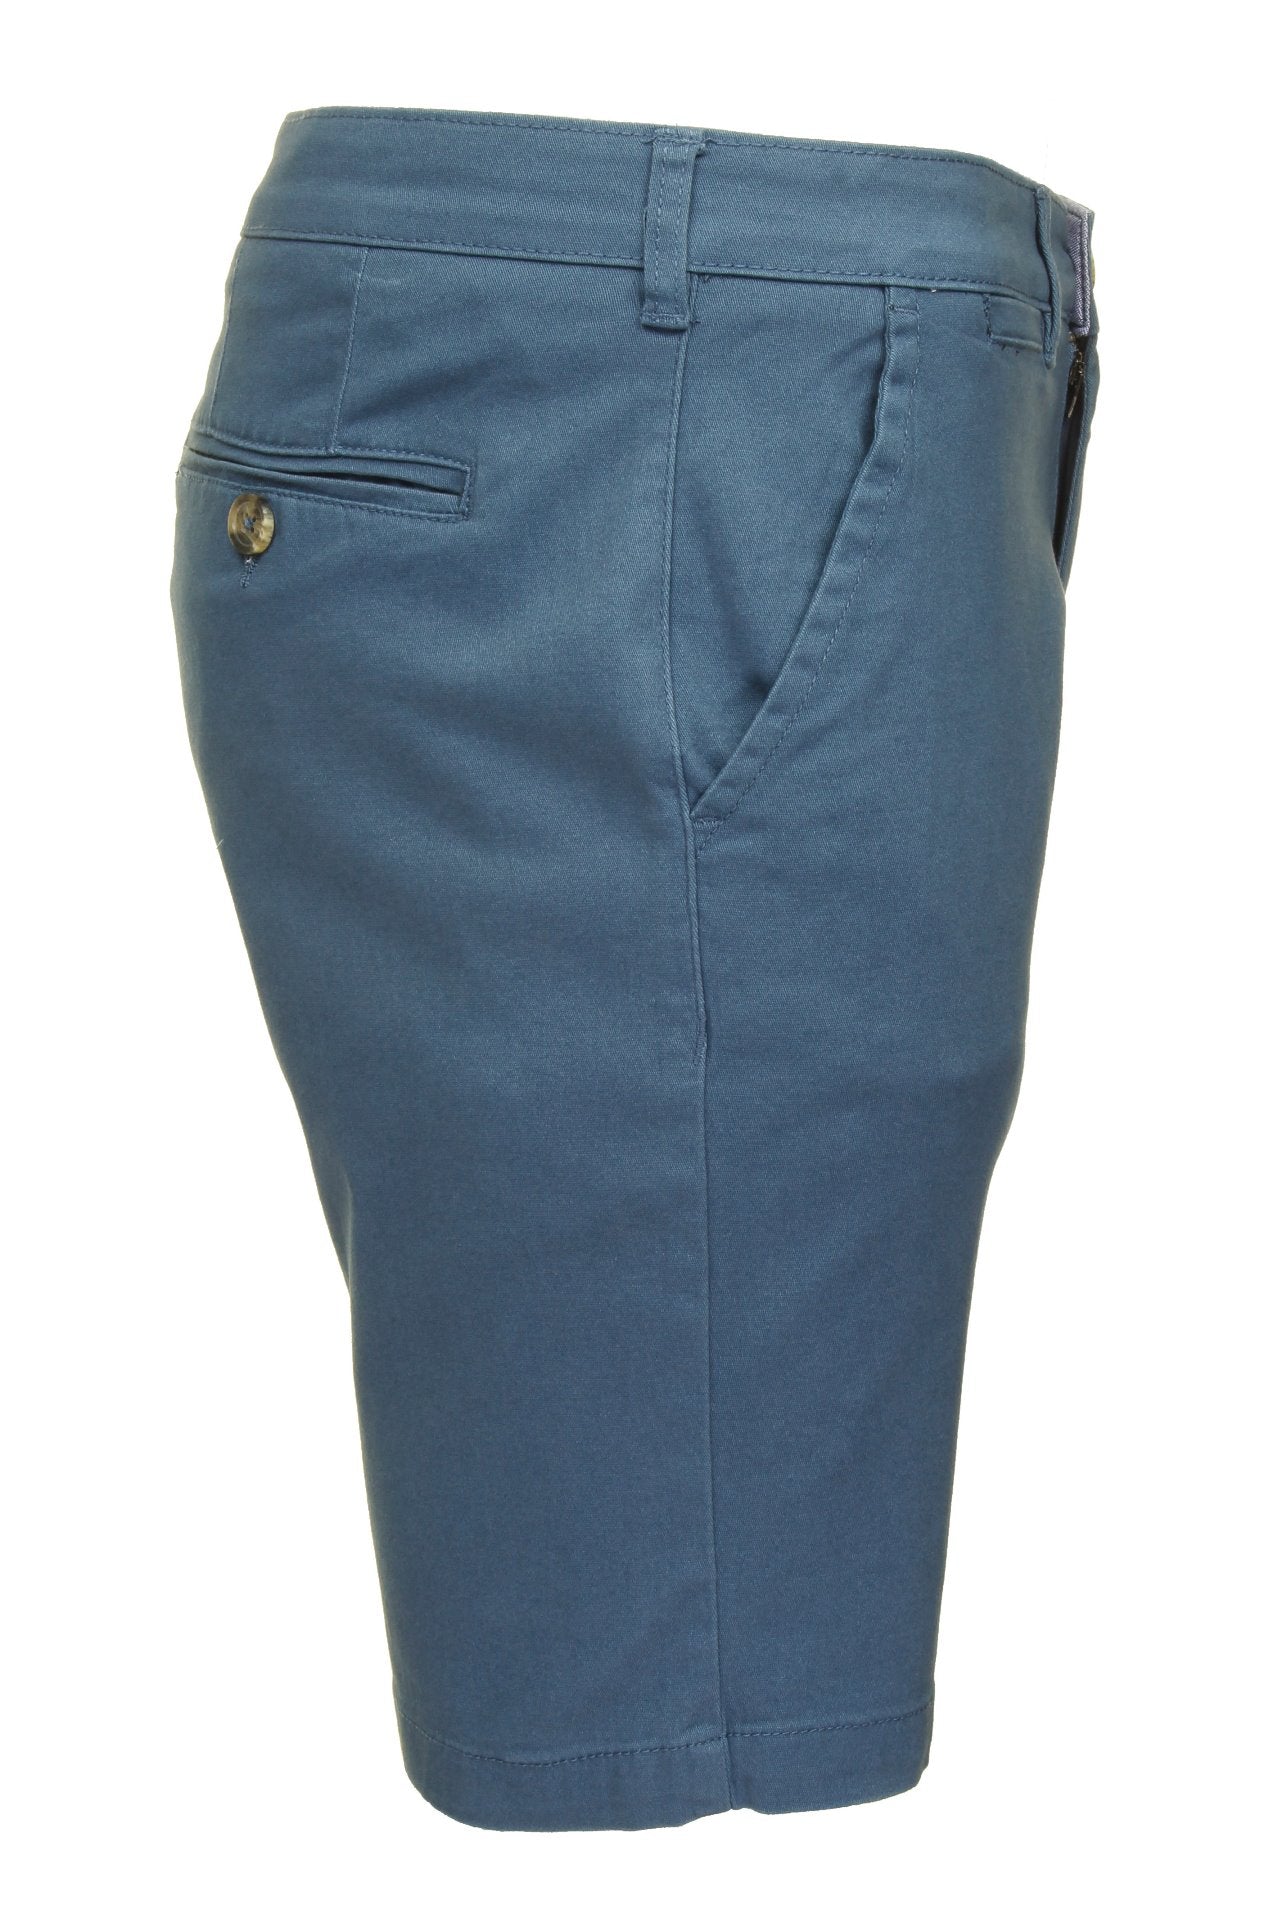 Xact Chino Shorts Mens Soft Feel Cotton Fashion Garment-2